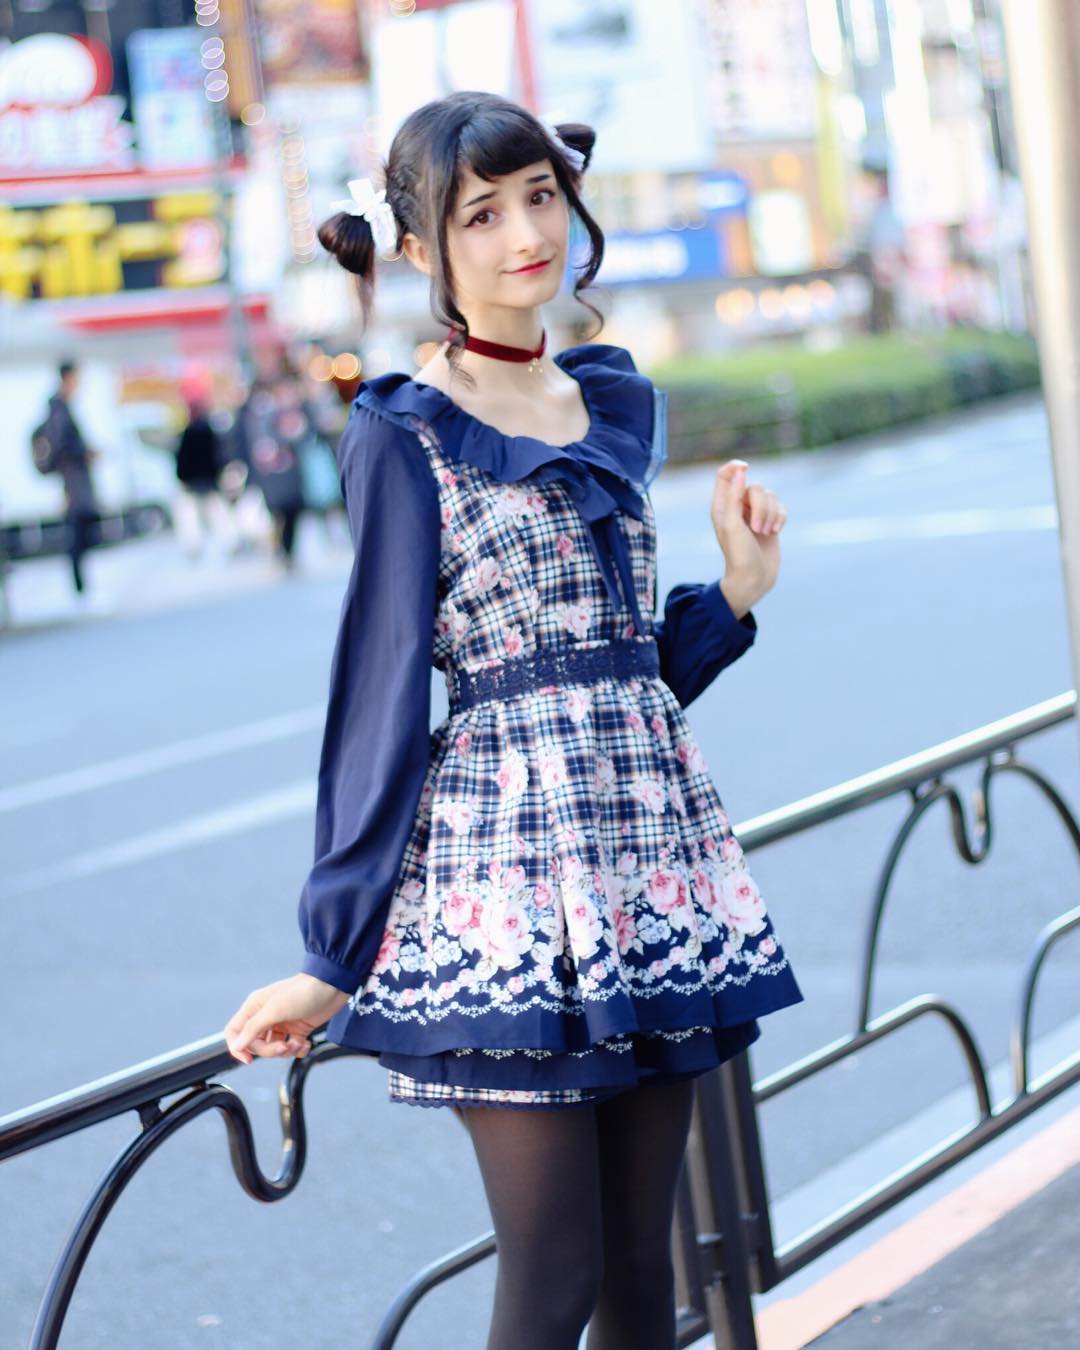 日本少女时尚穿搭,甜美轻熟随意变换,原宿风发型很靓